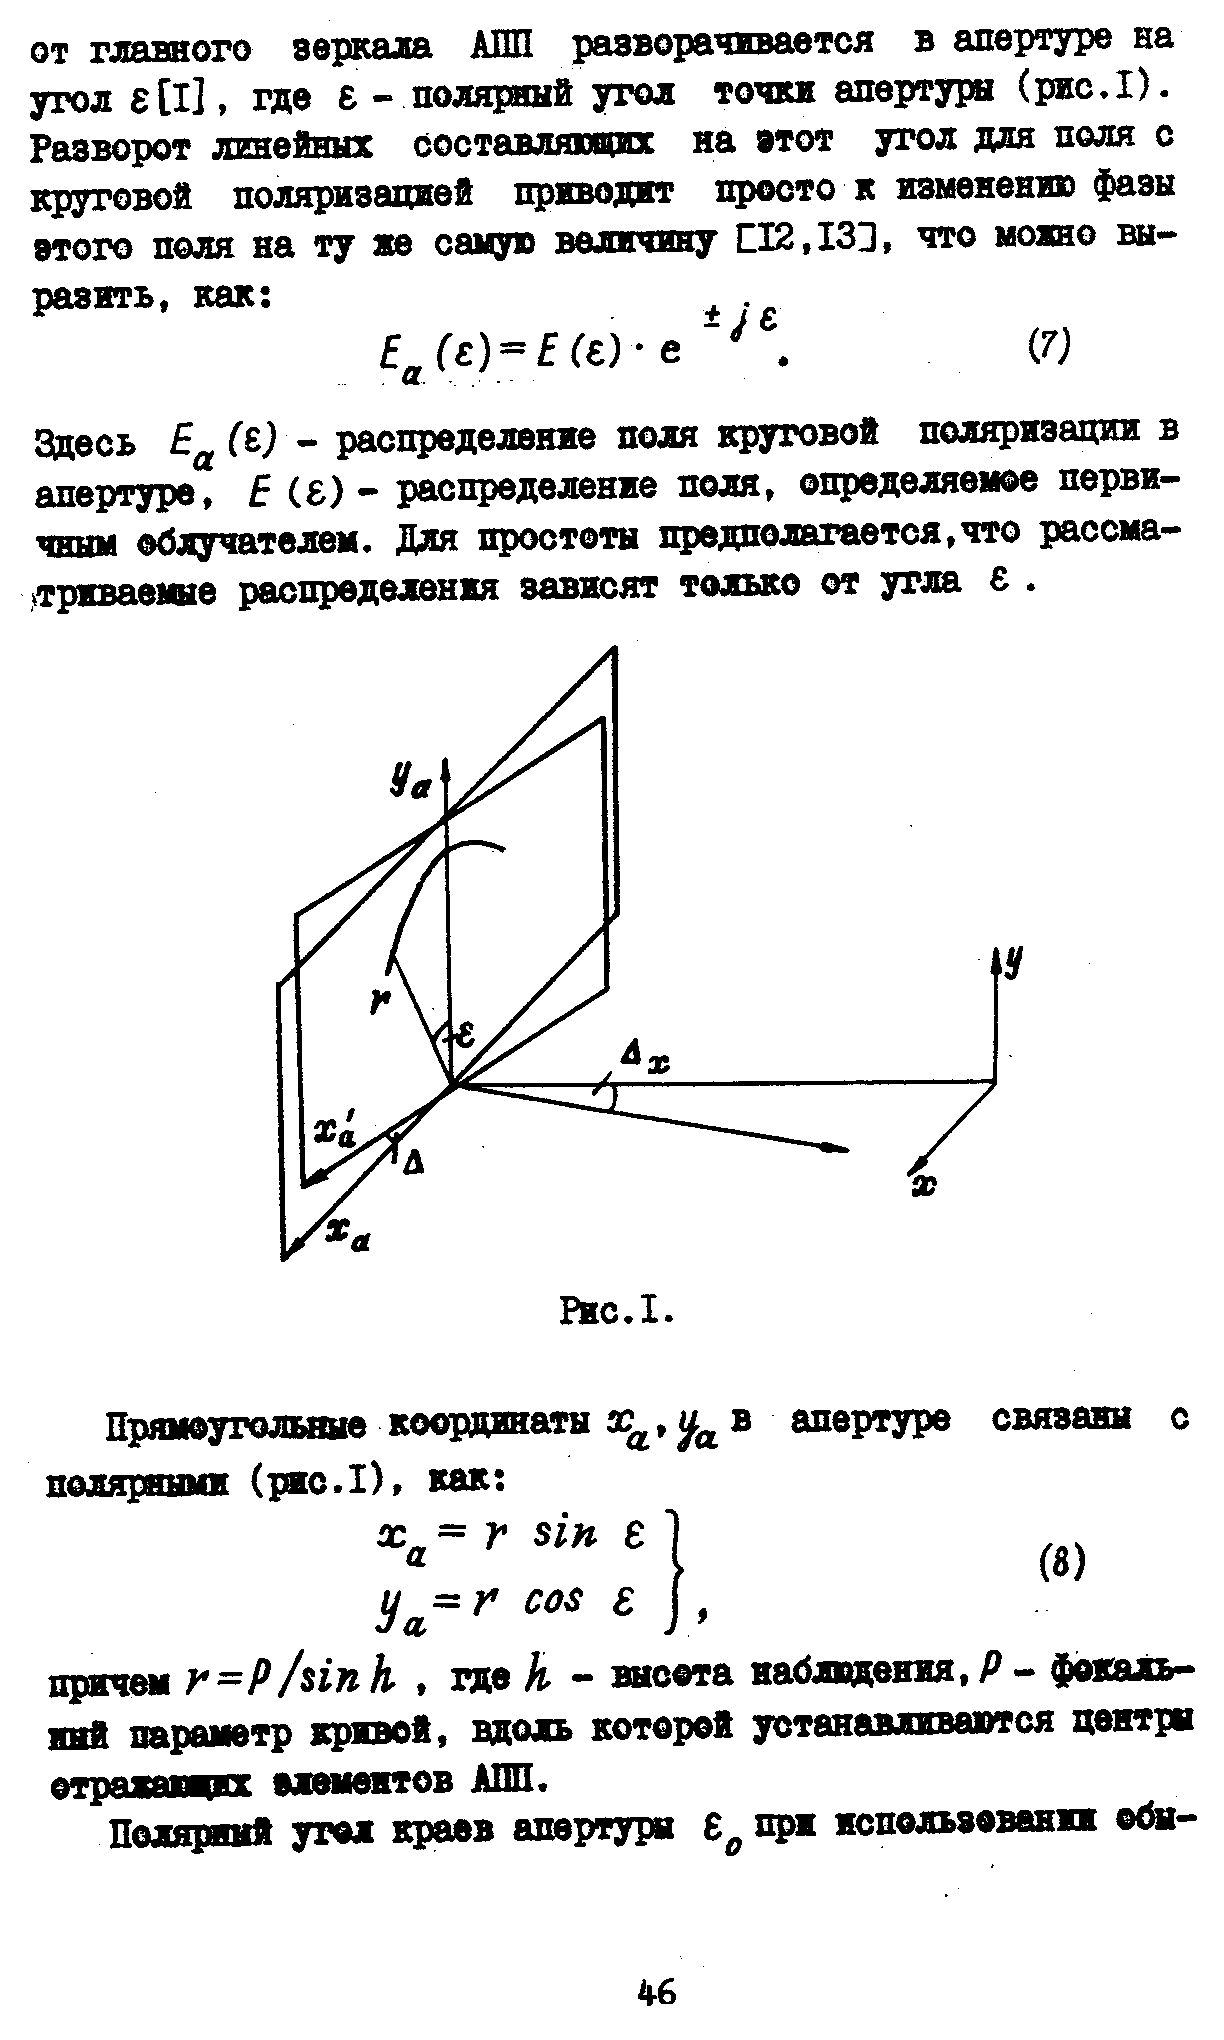 Коржавин А.Н.,стр.4